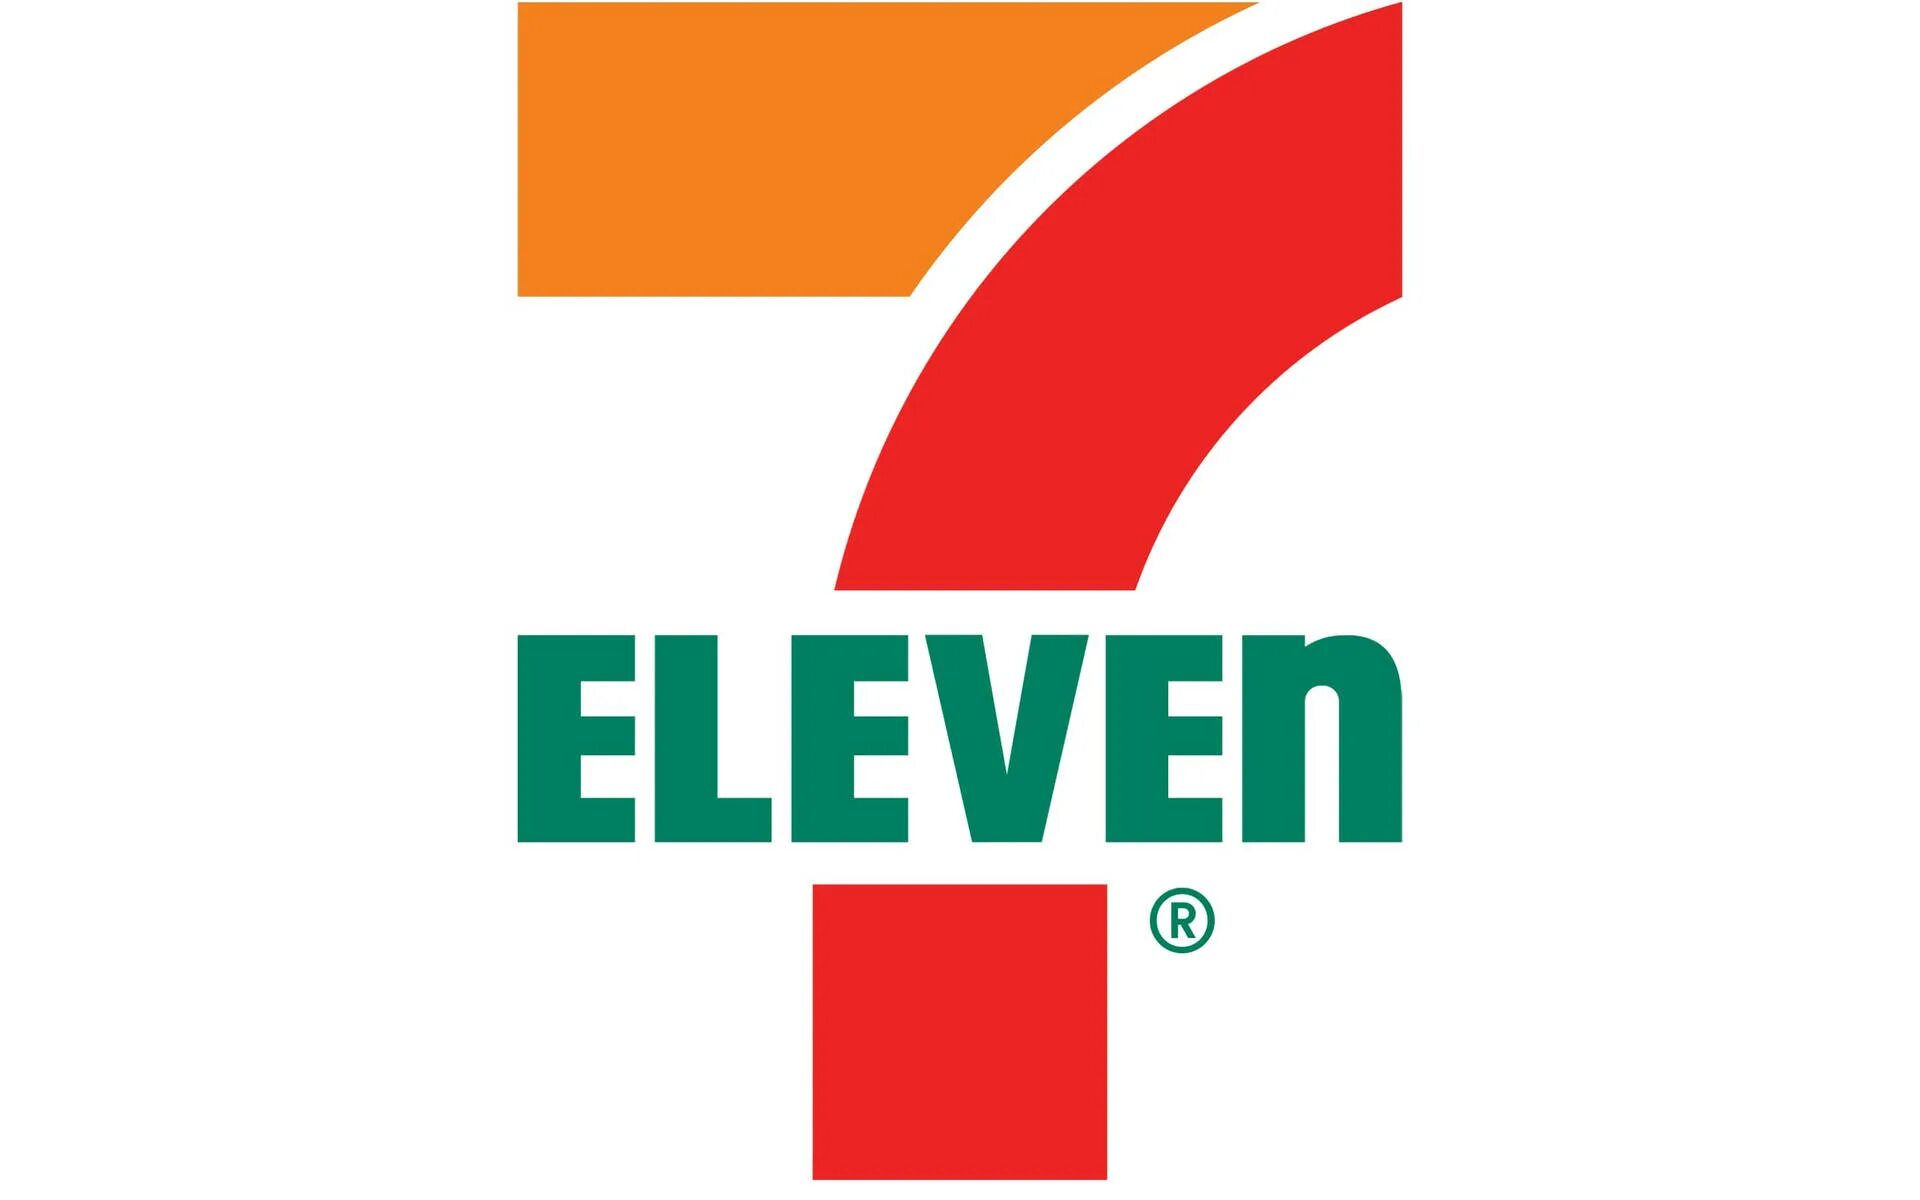 Зе севен. 7-Eleven, Inc.. Seven Eleven Малайзия. Seven Eleven логотип. 711 Лого.